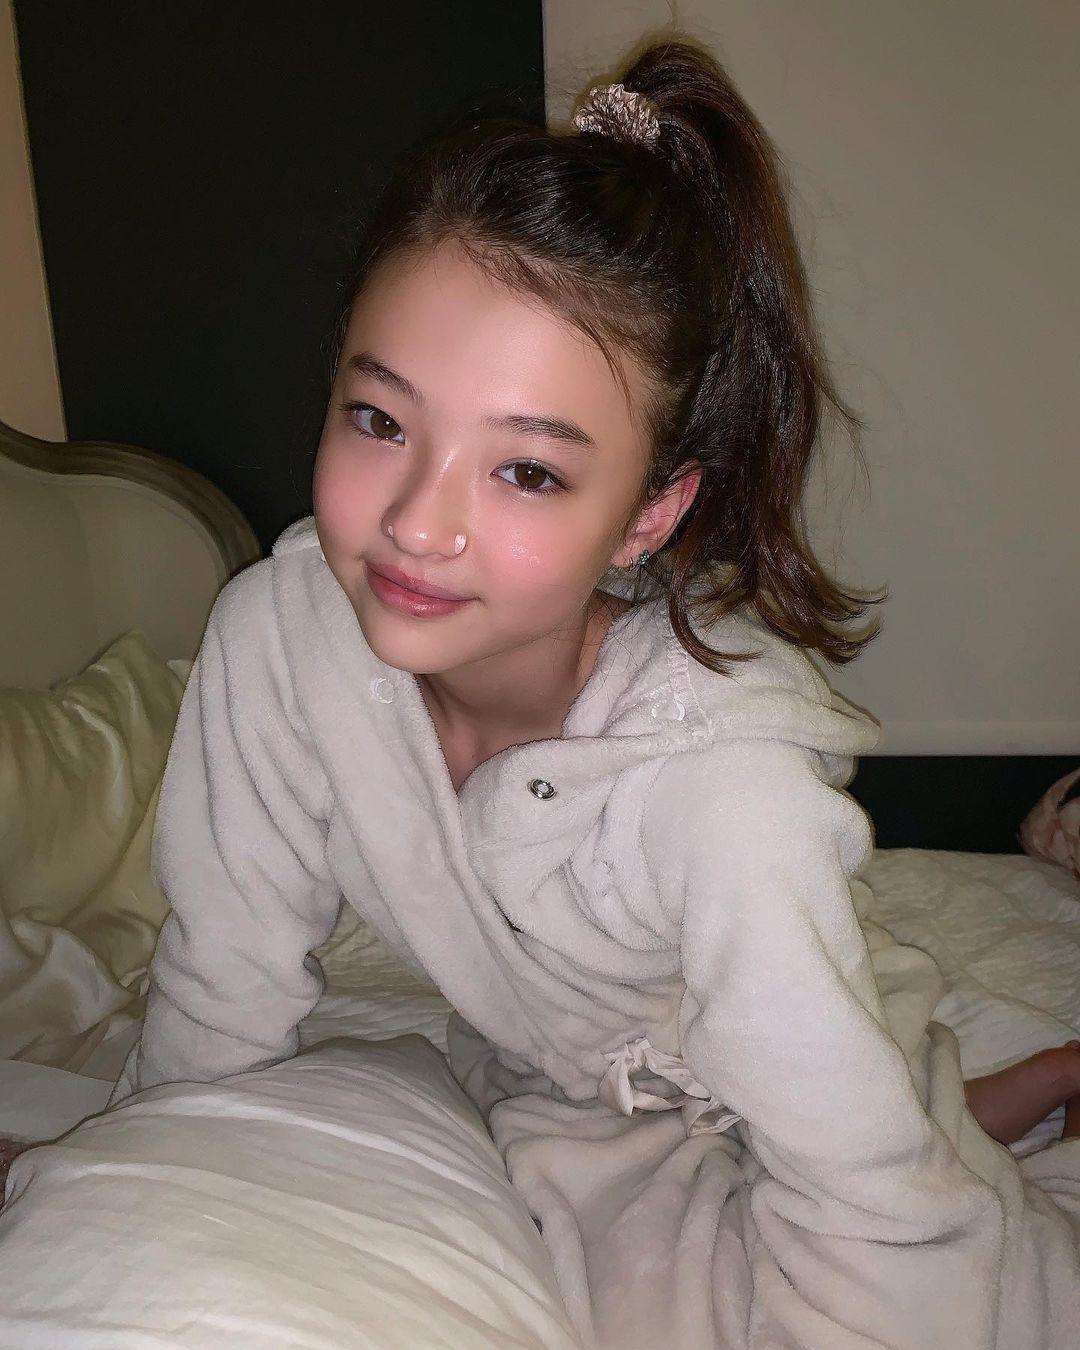 Nhan sắc mẫu nhí xinh nhất thế giới được Sơn Tùng follow ở tuổi 13 - Ảnh 16